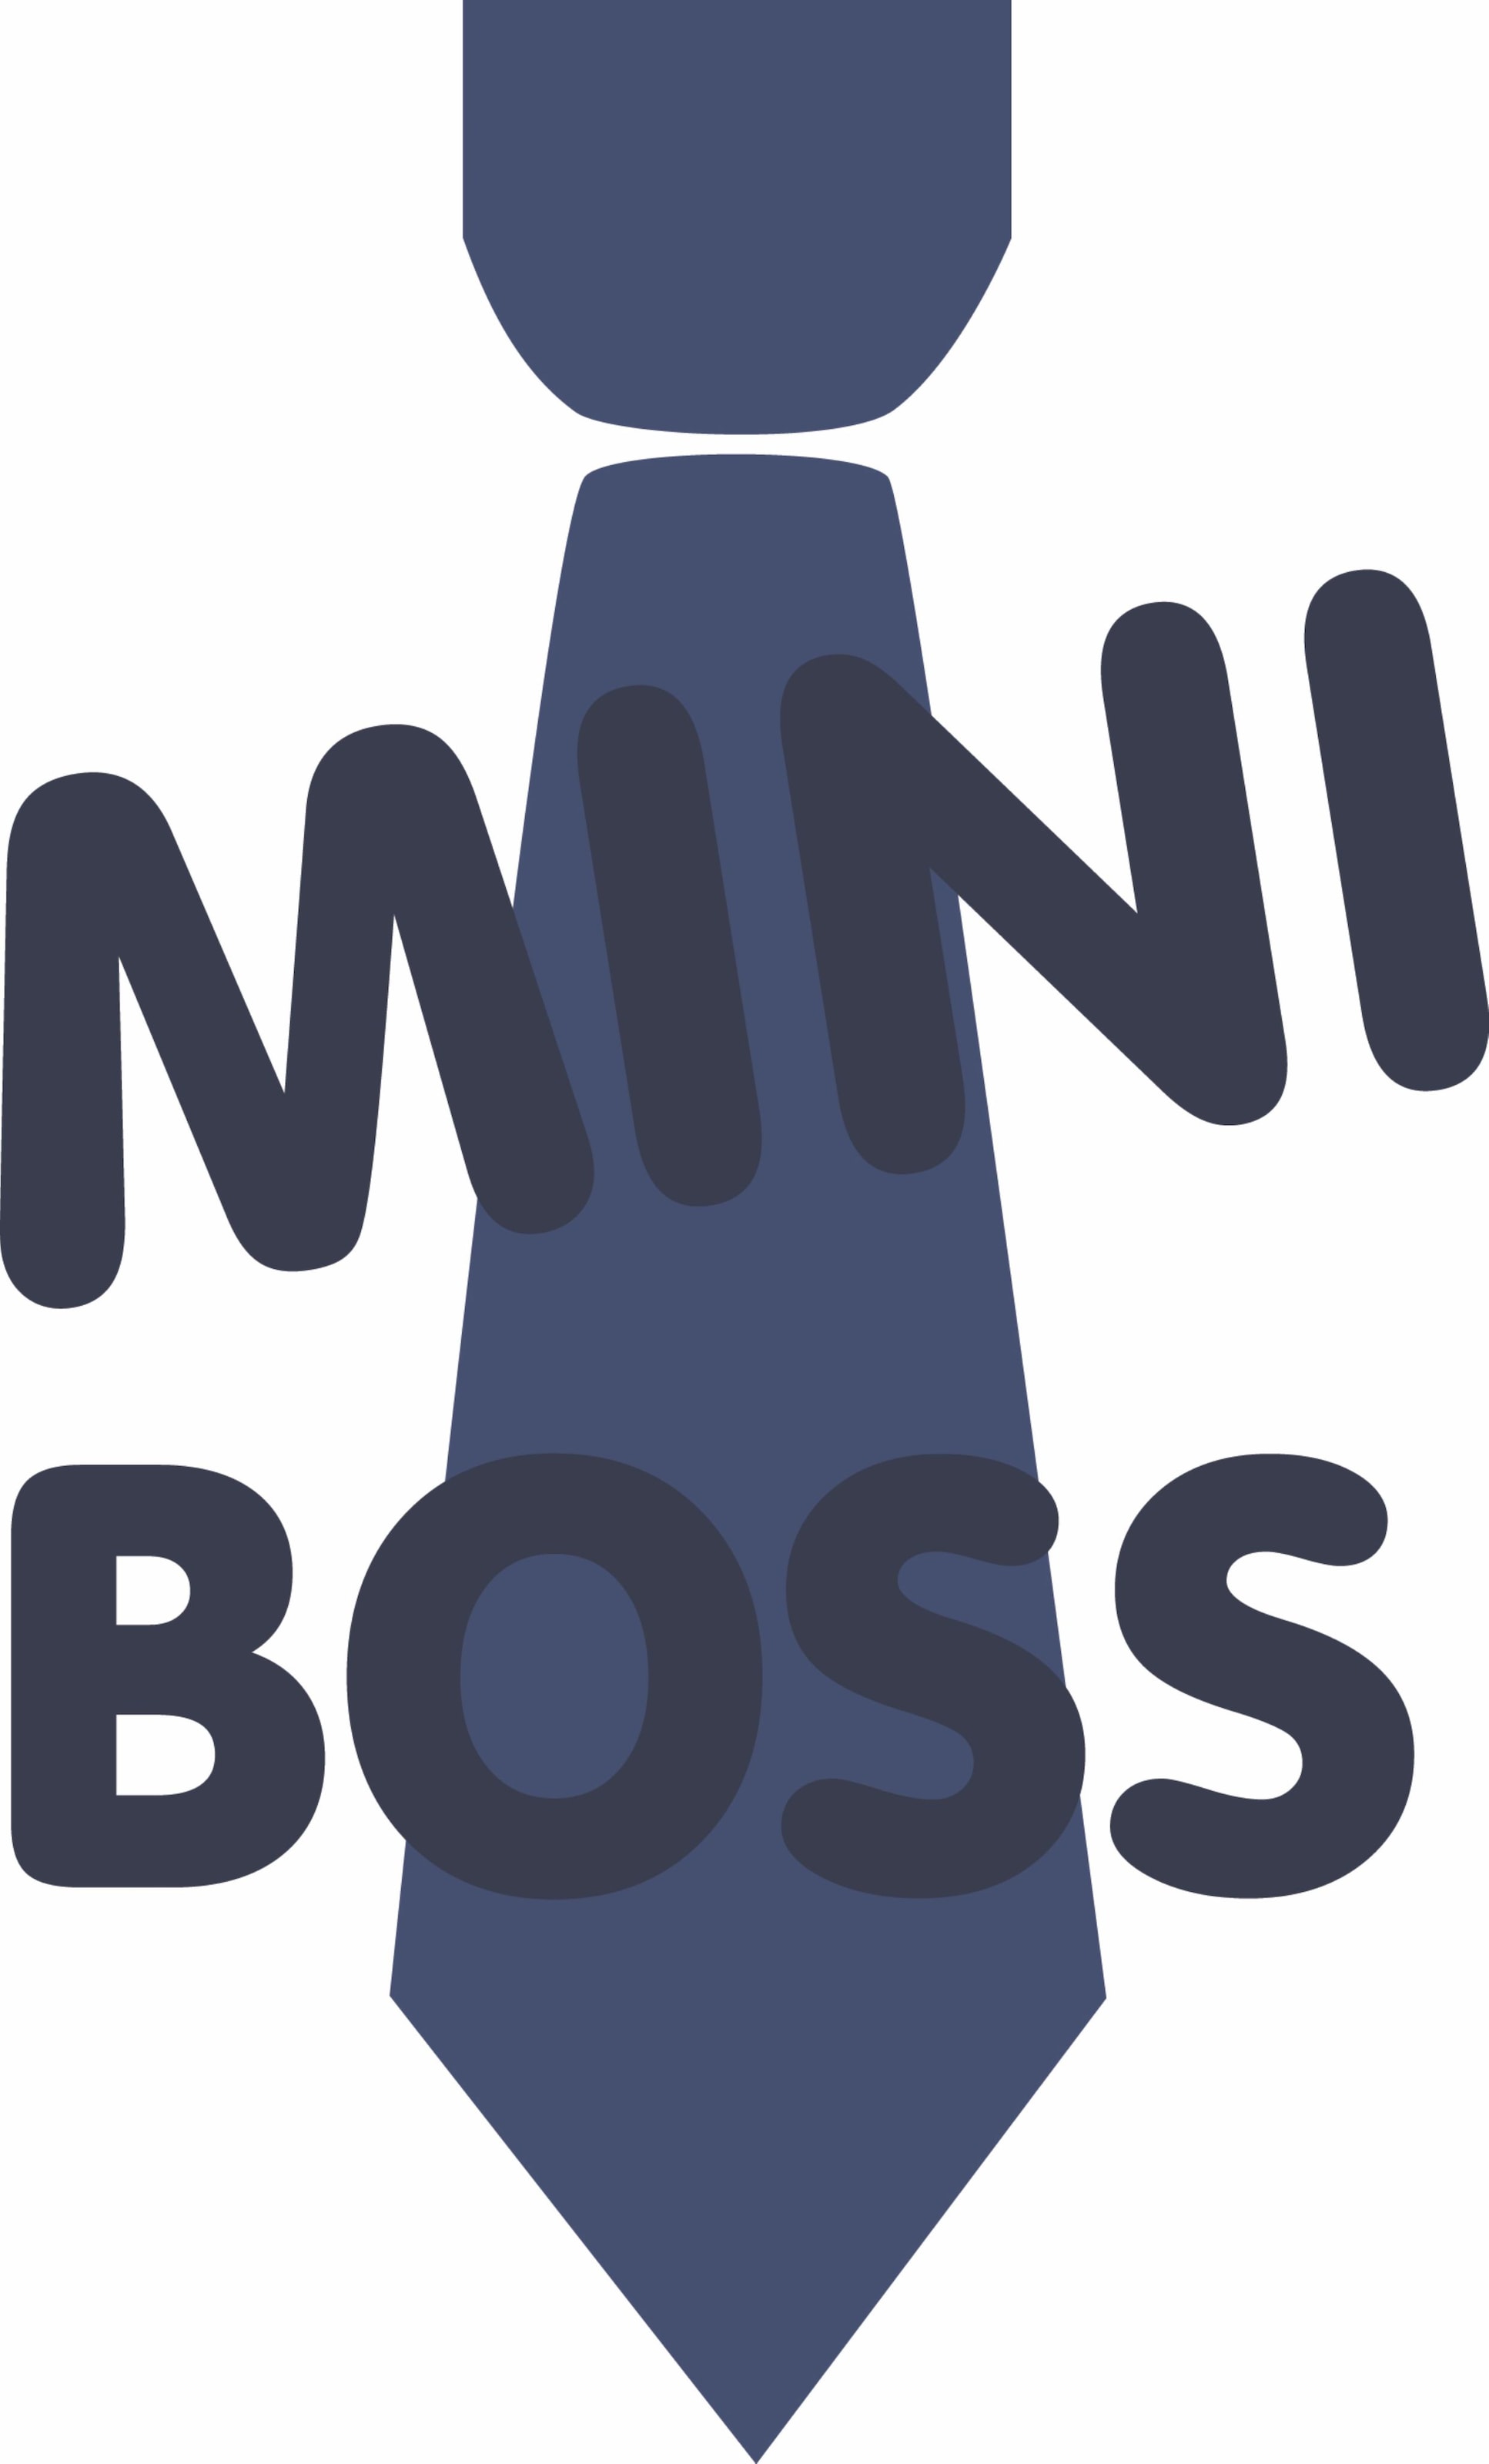 Liliput Langarmshirt »Mini Boss«, mit lustigem Frontprint